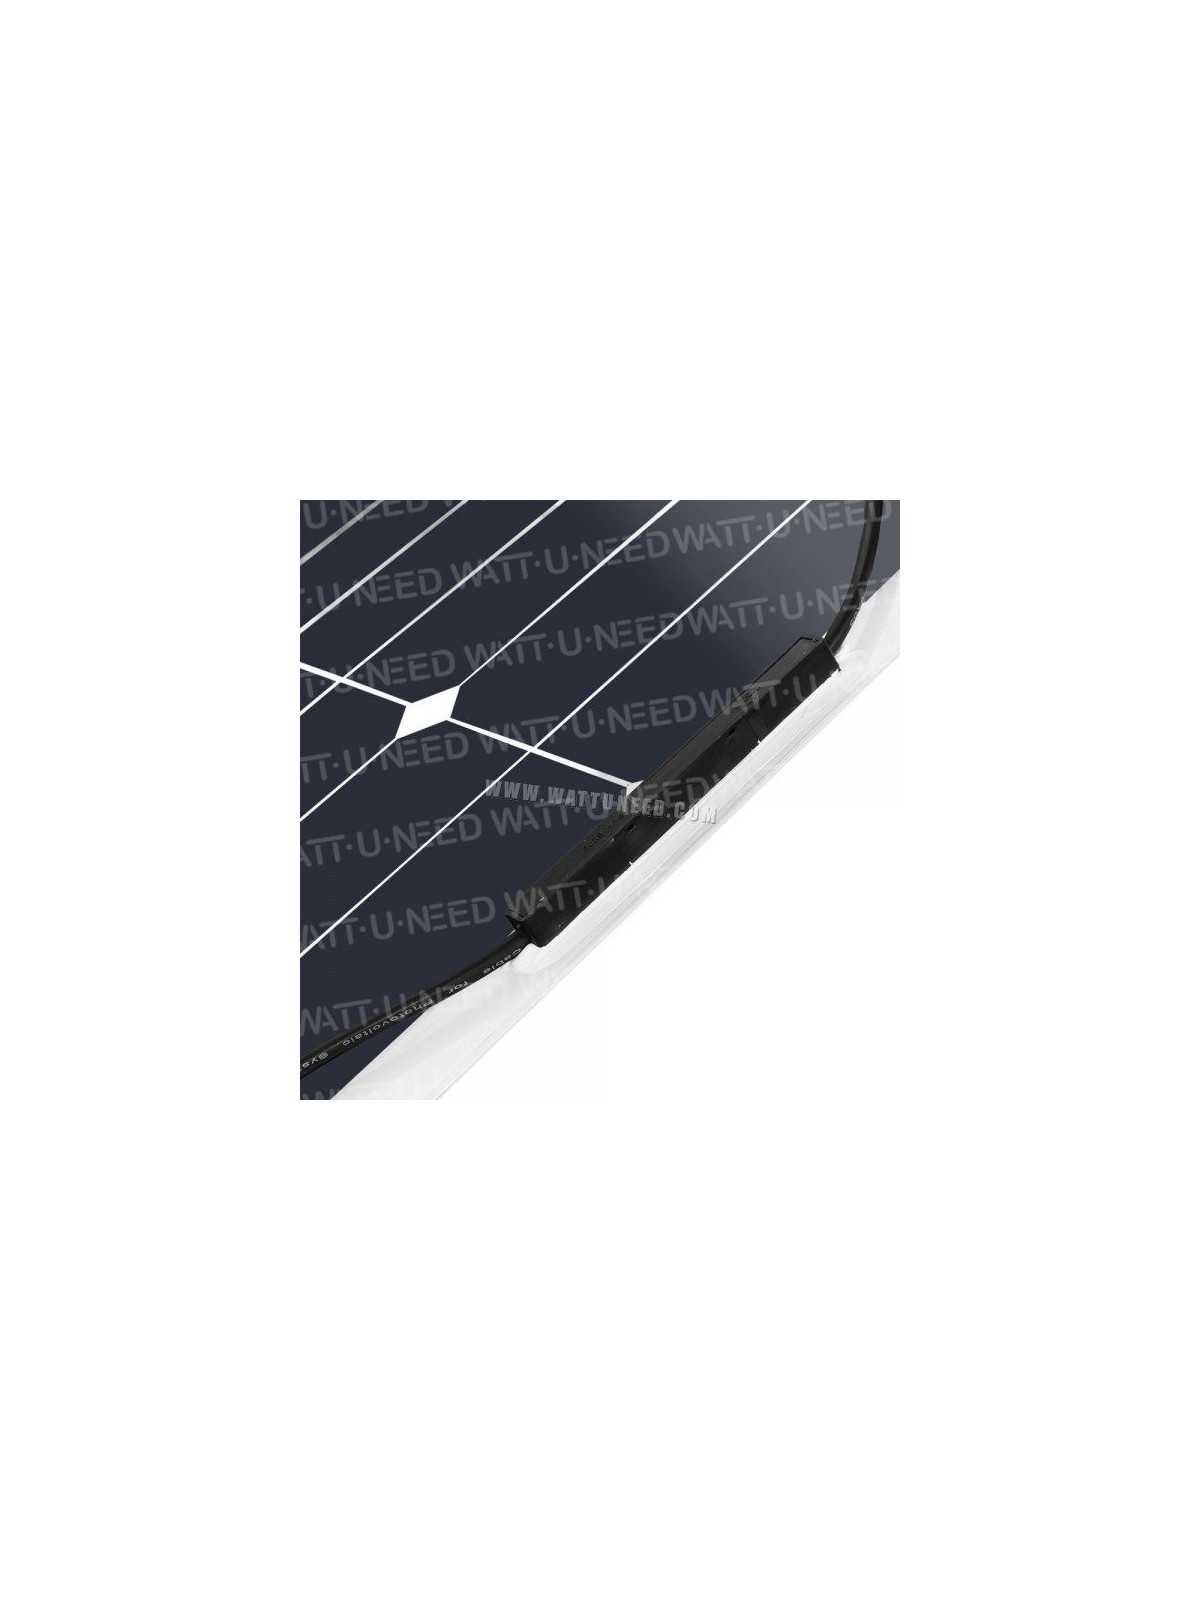 12V Solarpanel MX FLEX Protect 50Wp Back Contact